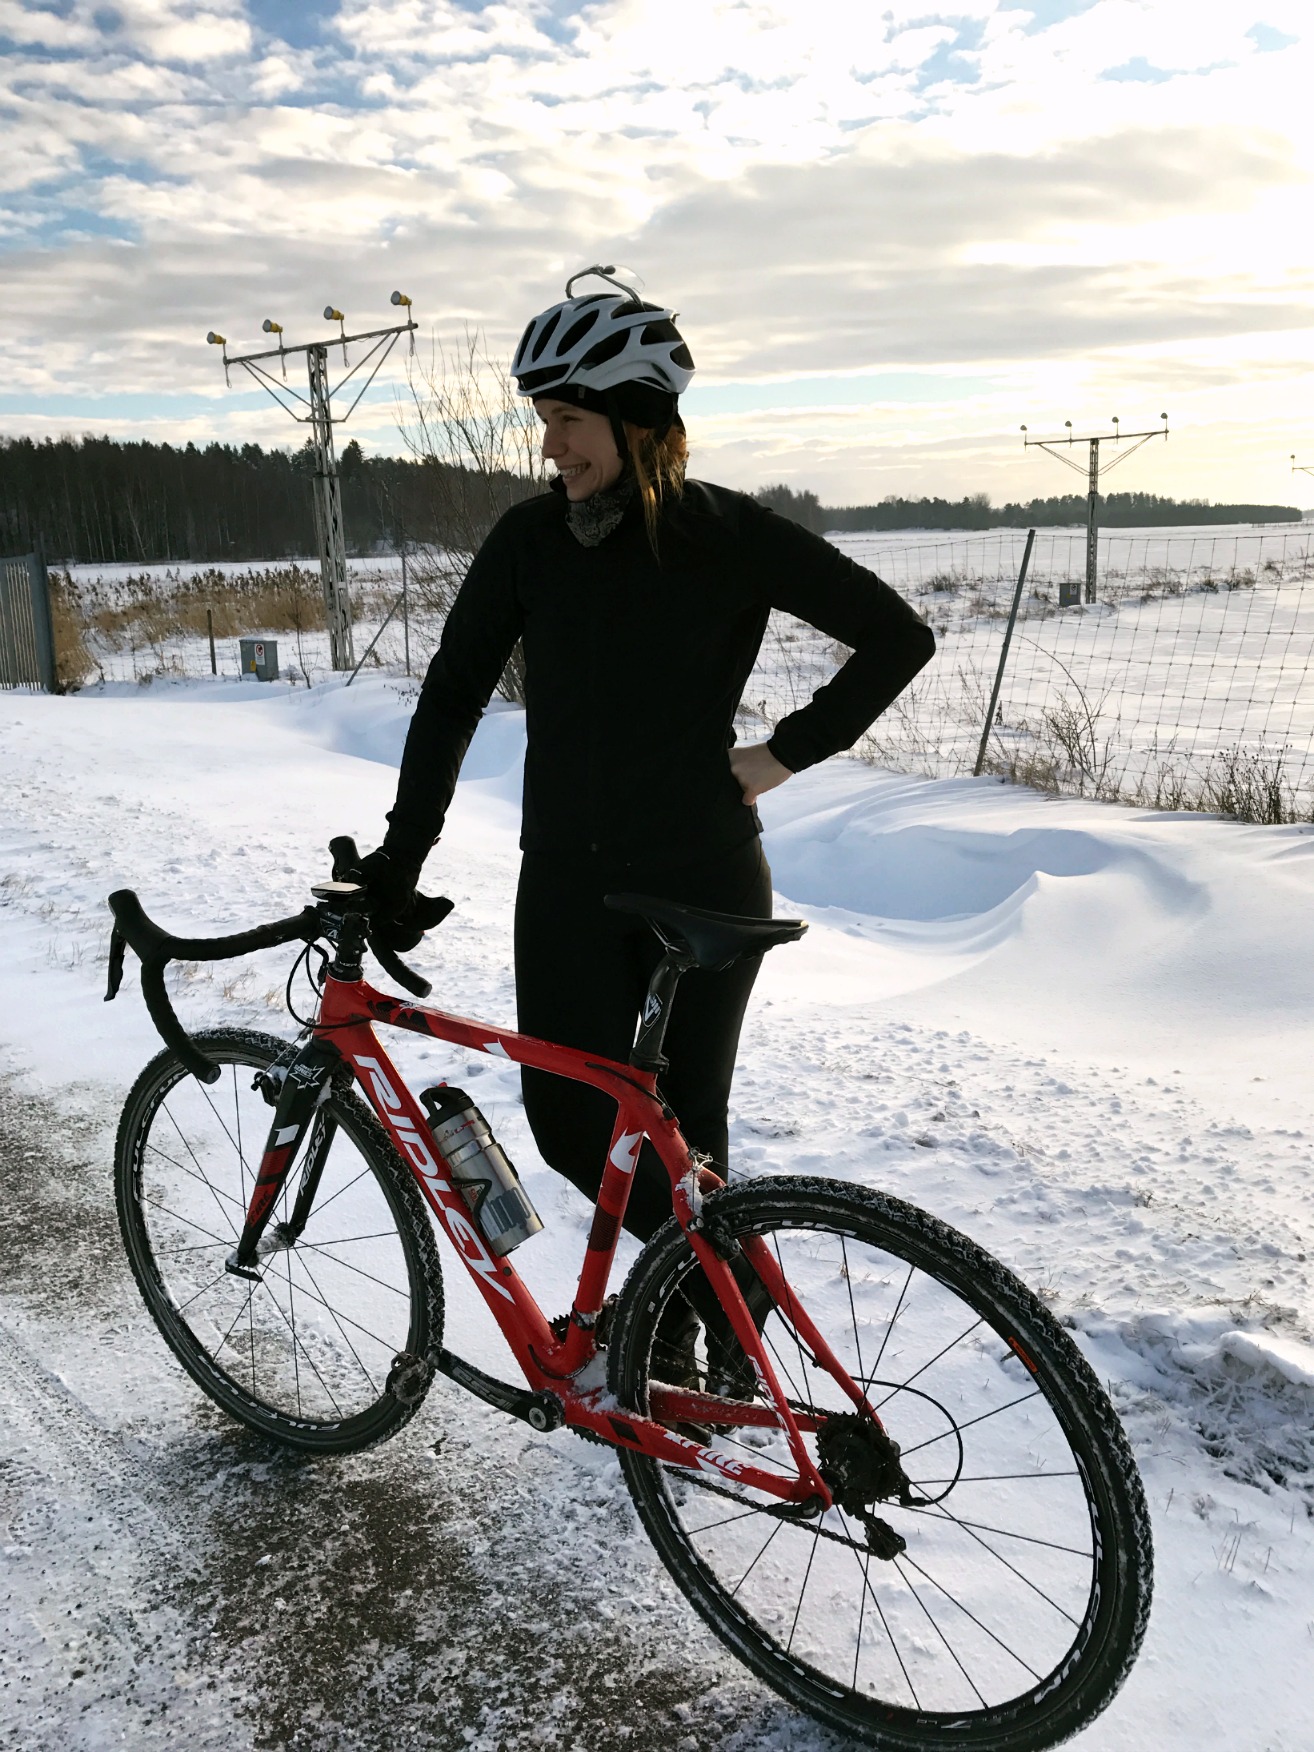 Katjas kroppsfunderingar under tiden hon bestiger cykelbanornas snövallar